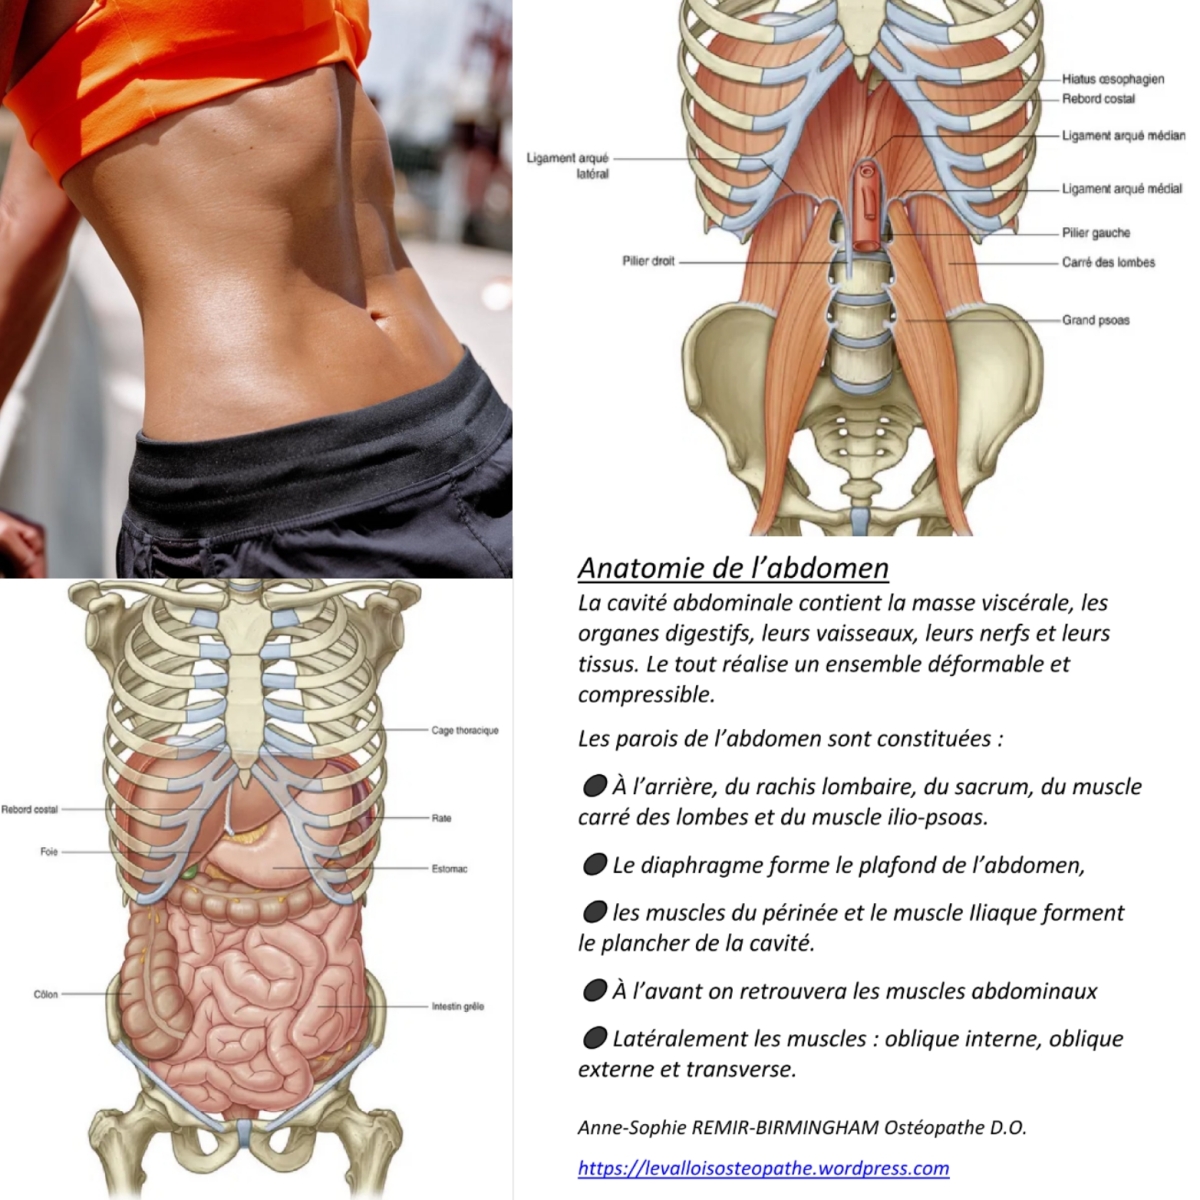 Anatomie de l'abdomen – Anne-Sophie REMIR-BIRMINGHAM